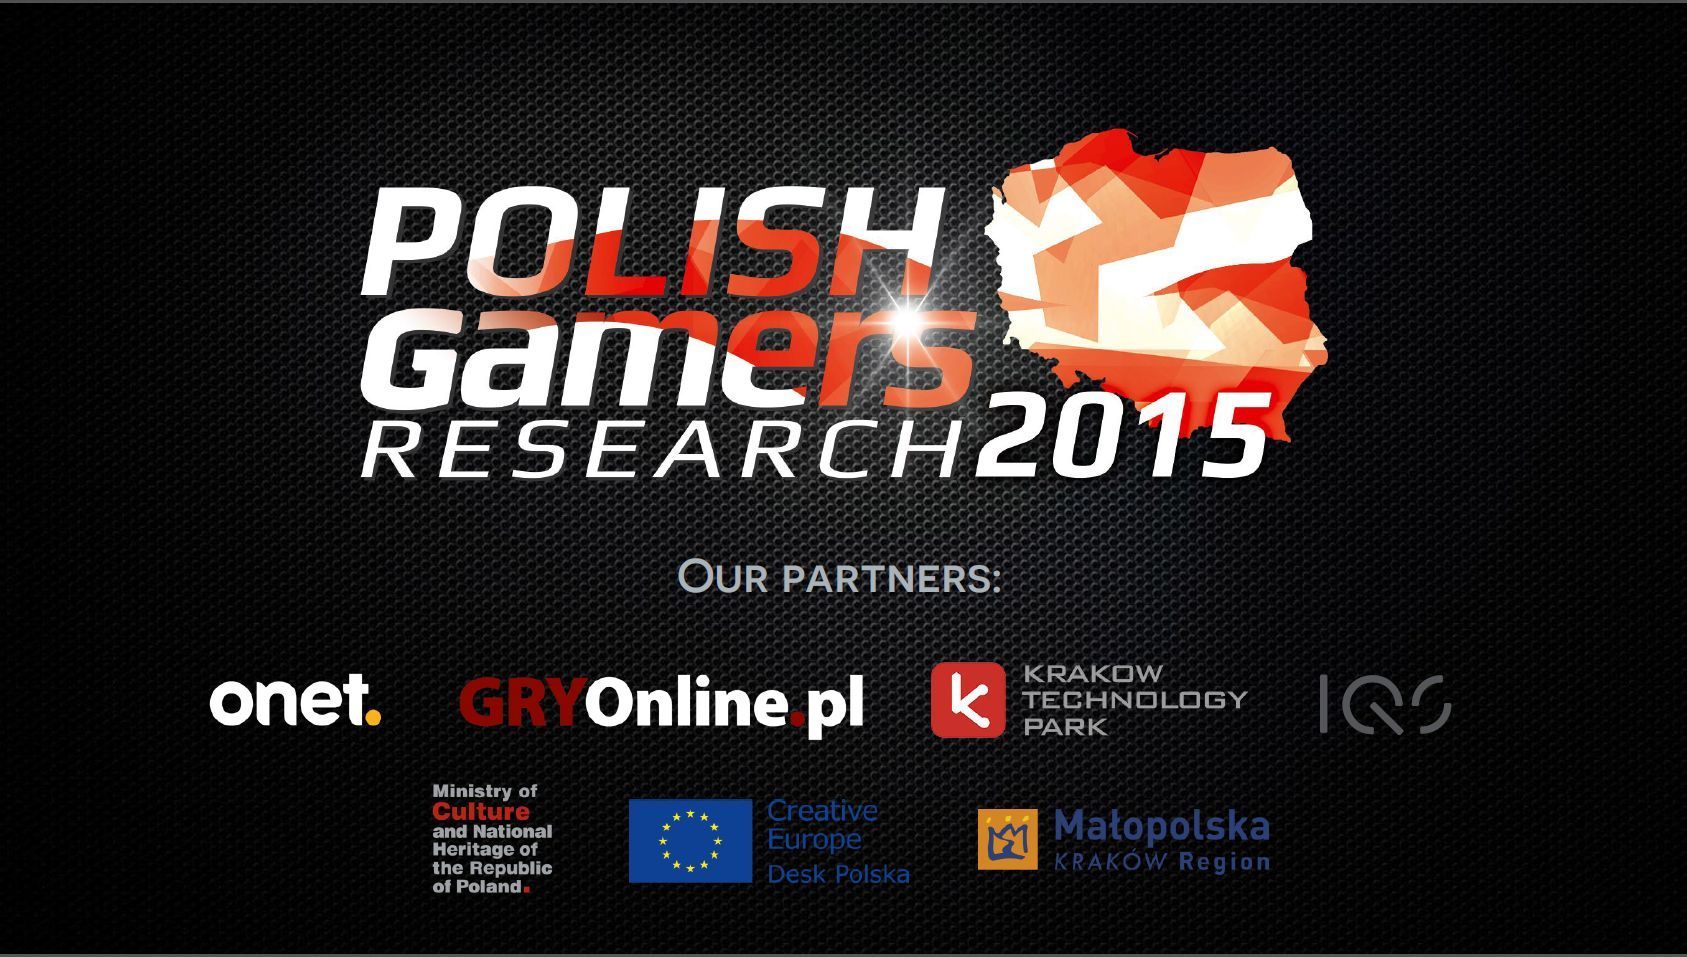 Gry w Polsce to stale rosnący rynek - Najpopularniesze źródła gier w Polsce według badań na Digital Dragons 2015 - wiadomość - 2015-05-25